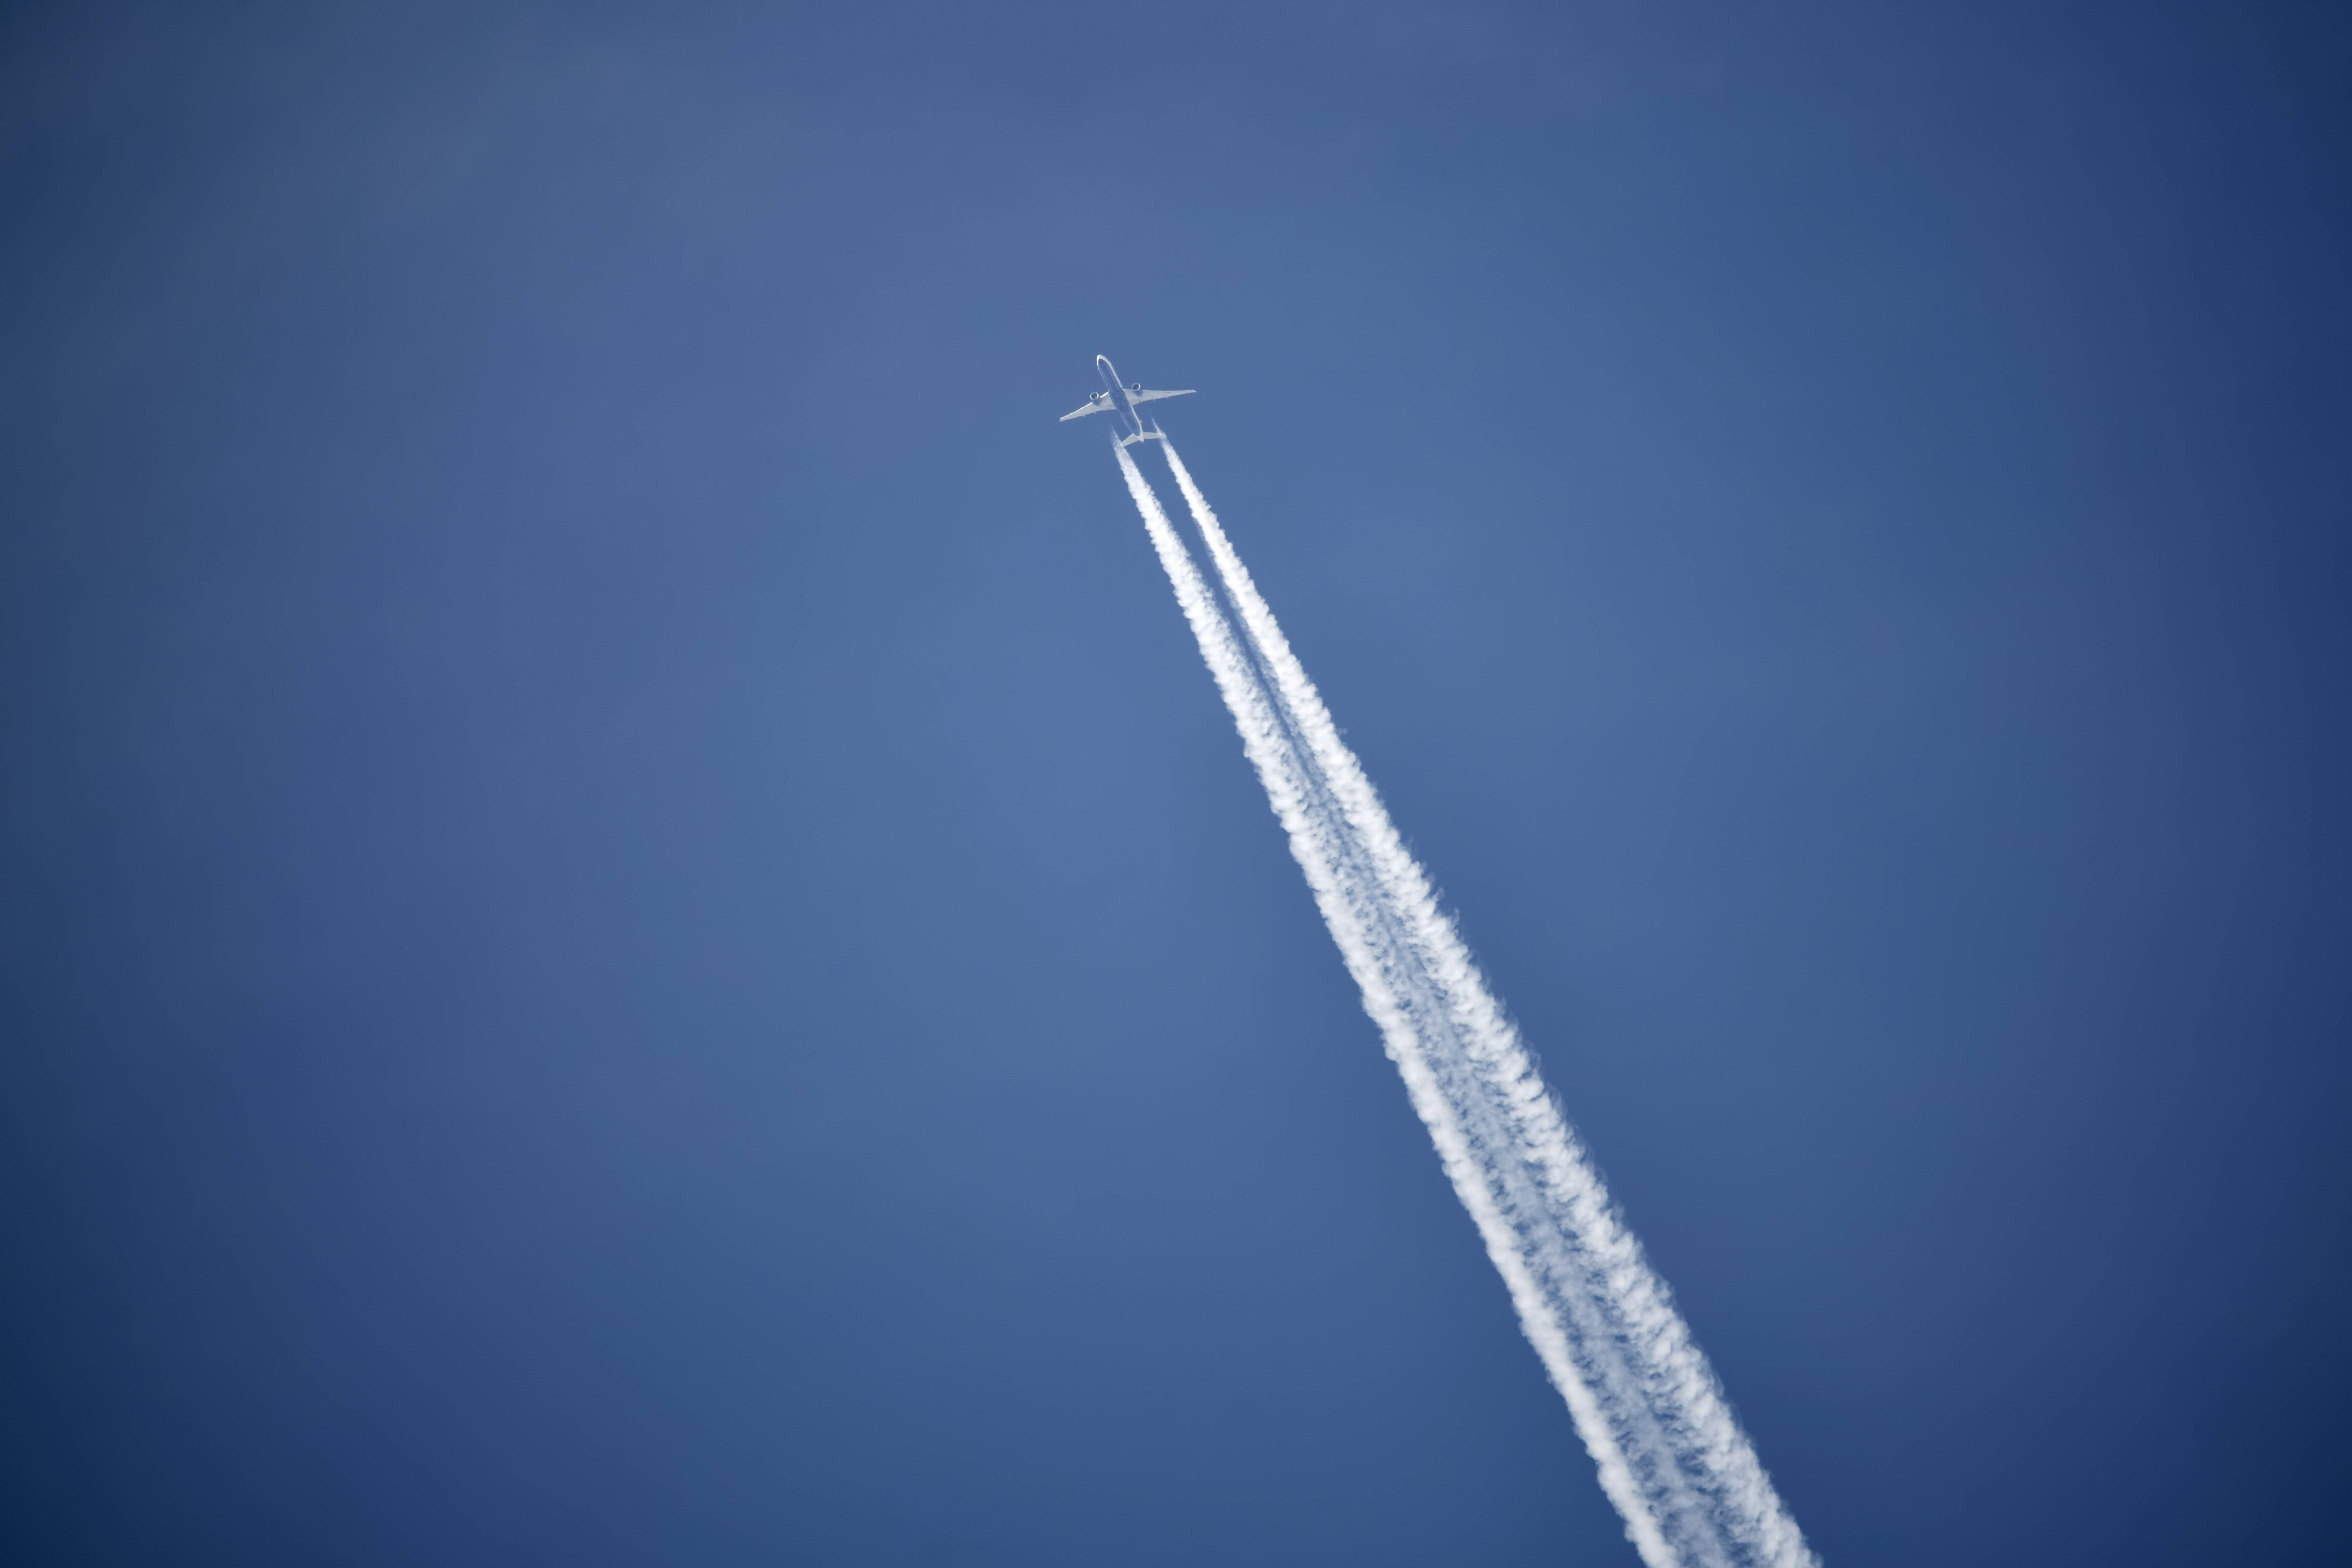 Grünes Kerosin: Warum tanken Airlines kaum nachhaltigen Treibstoff?